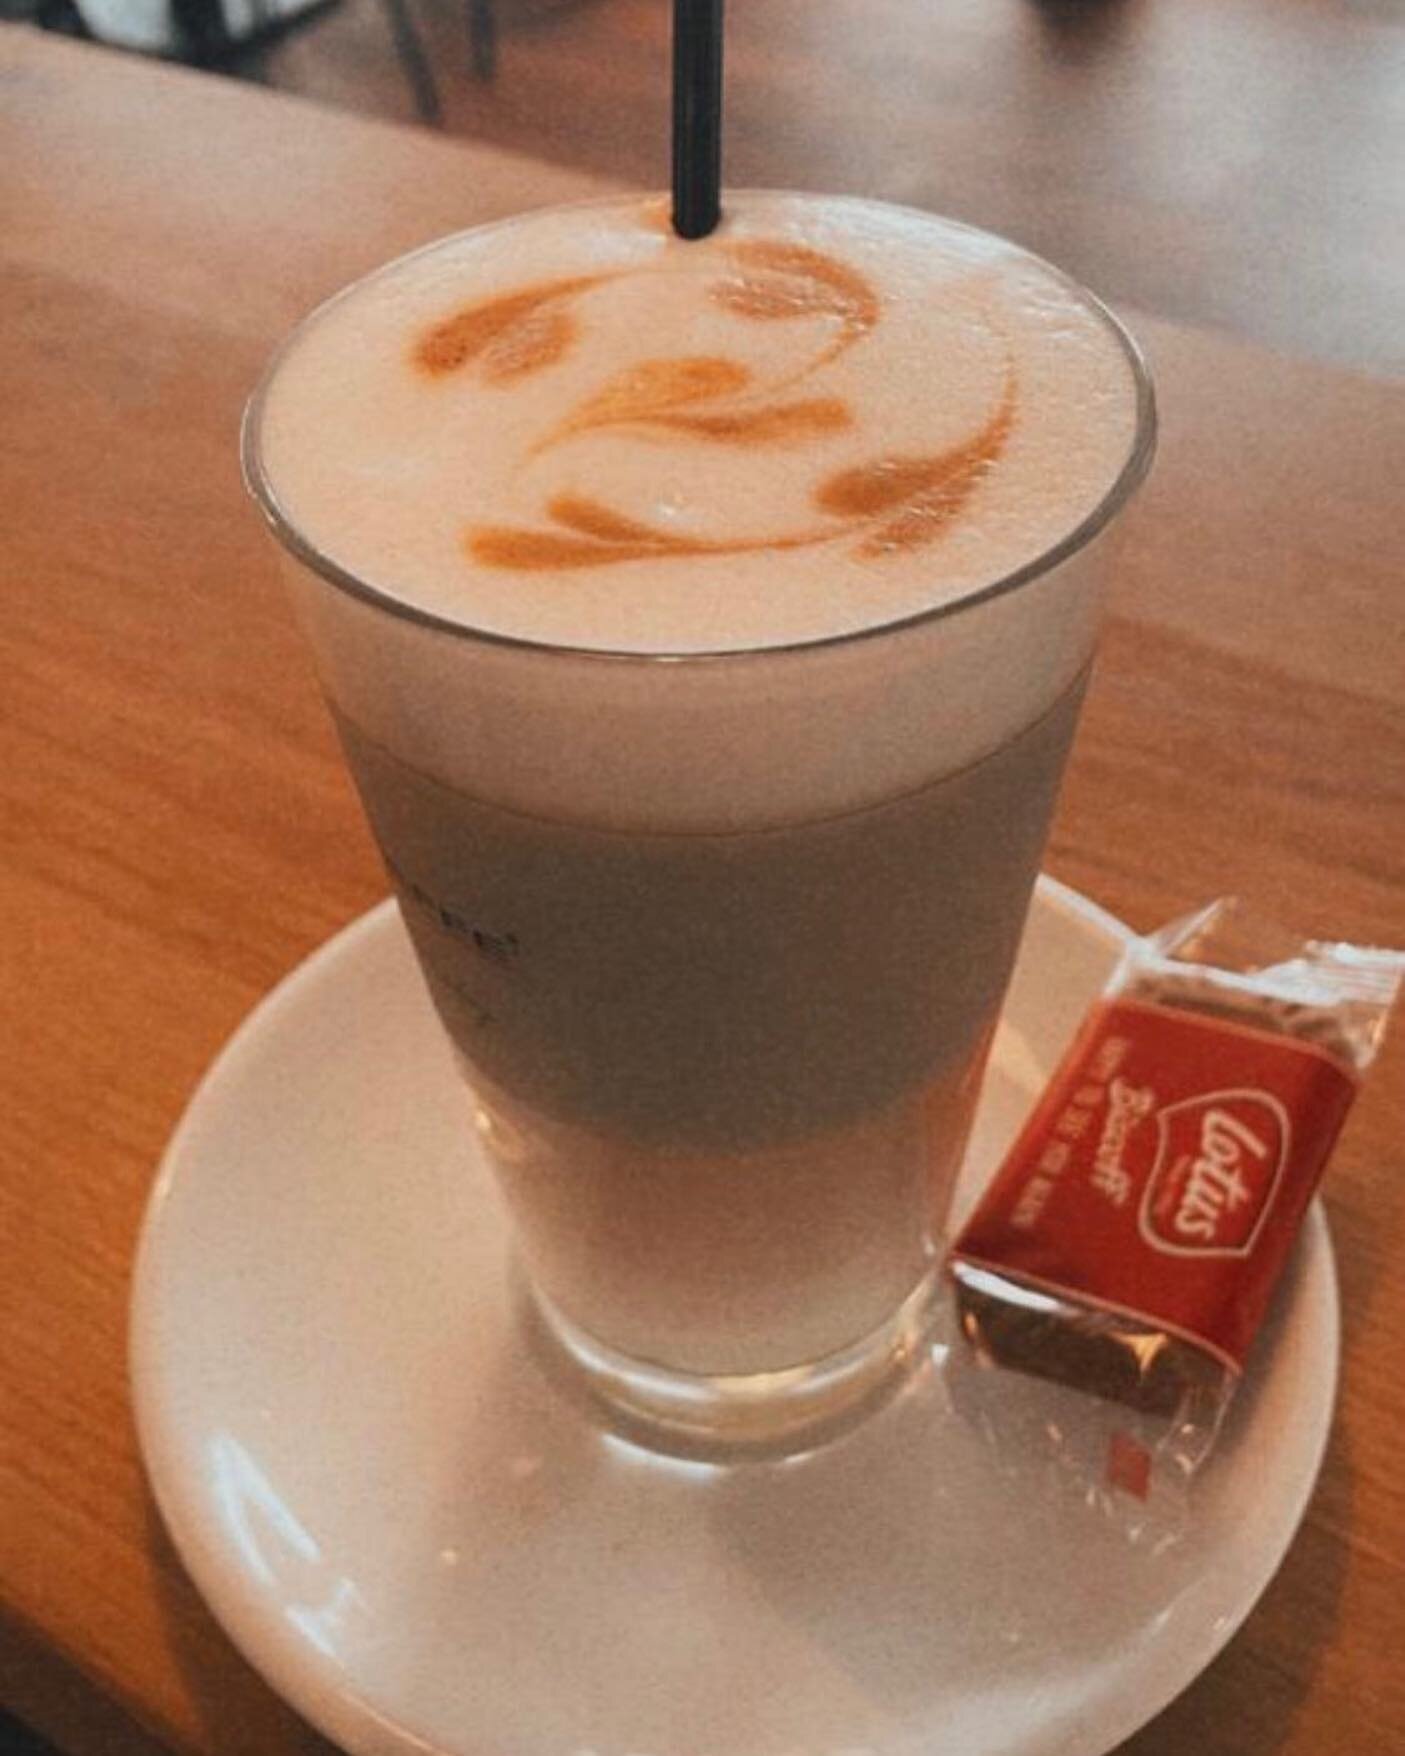 ❤️Alle Kaffeespezialit&auml;ten jetzt auch Laktosefrei ❤️

#dieessbar #restaurant #cafe #bar #getr&auml;nke #essen #durchgehendge&ouml;ffnet #lattemacchiato #cappucino #macciatto #schokolade #keks #pavincaffe #laktosefrei #milch #richtiggut #herzlich